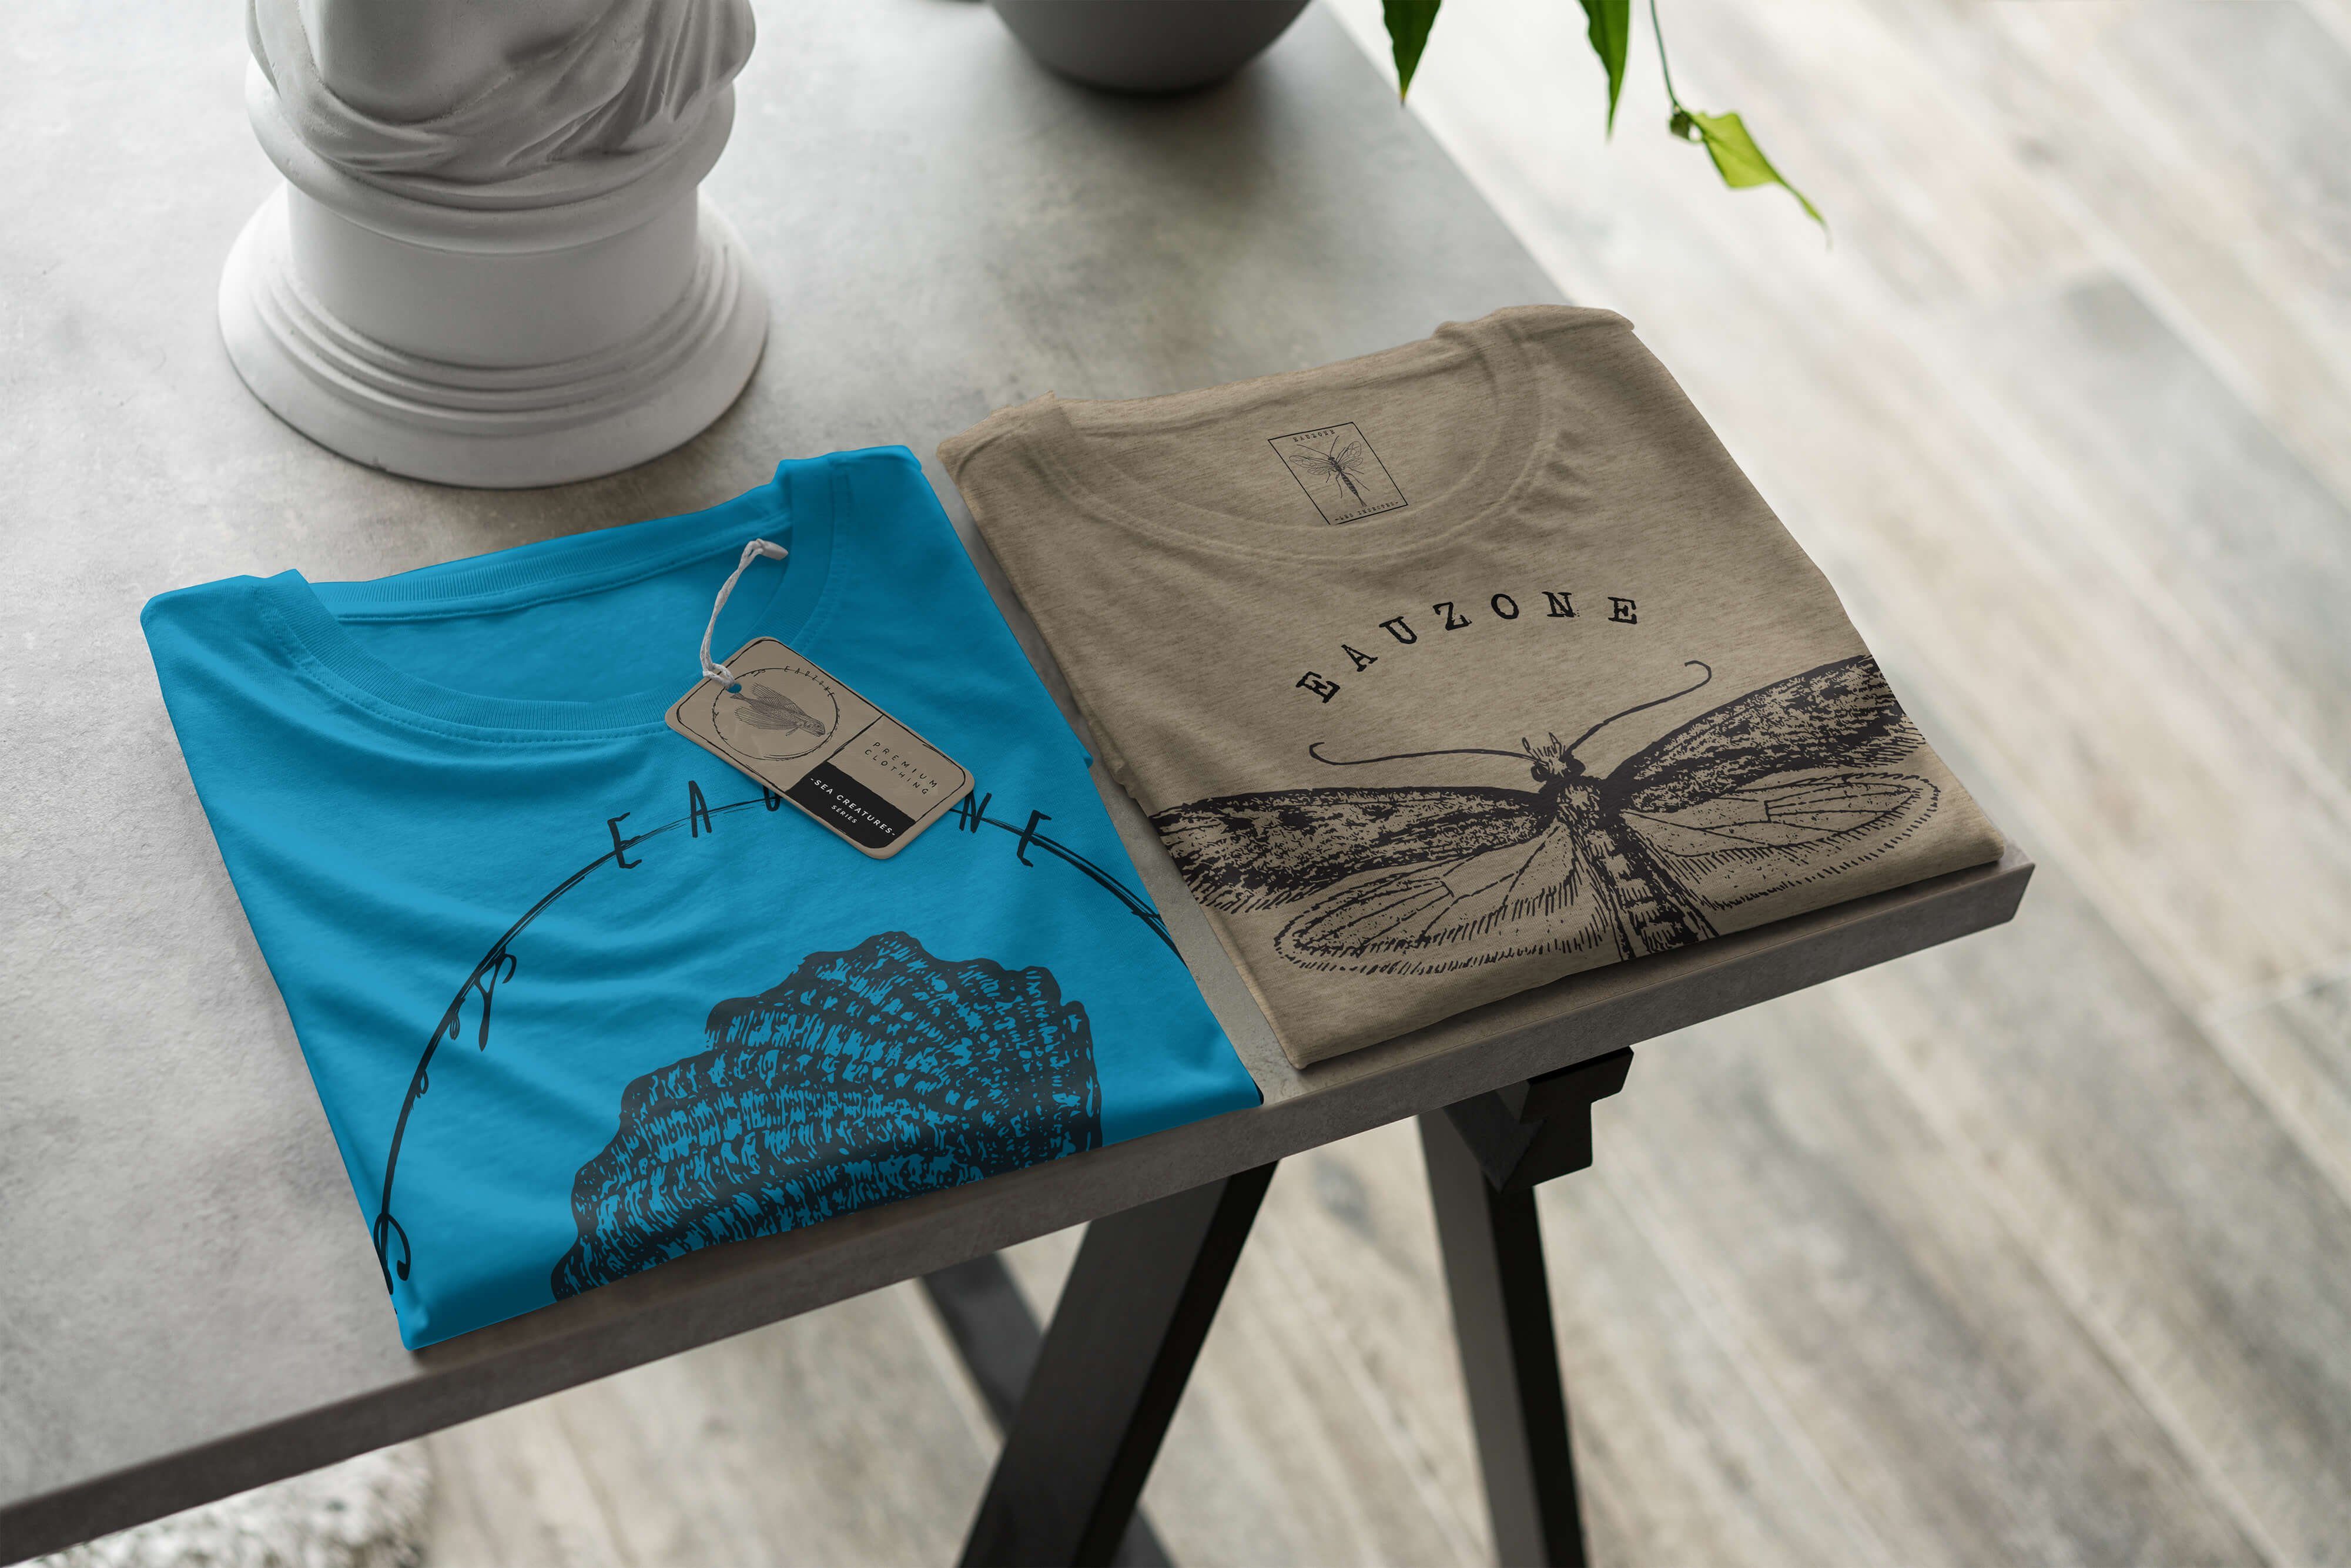 Sinus Art T-Shirt T-Shirt Tiefsee Sea / Fische und feine Serie: Atoll Struktur 067 - sportlicher Schnitt Creatures, Sea